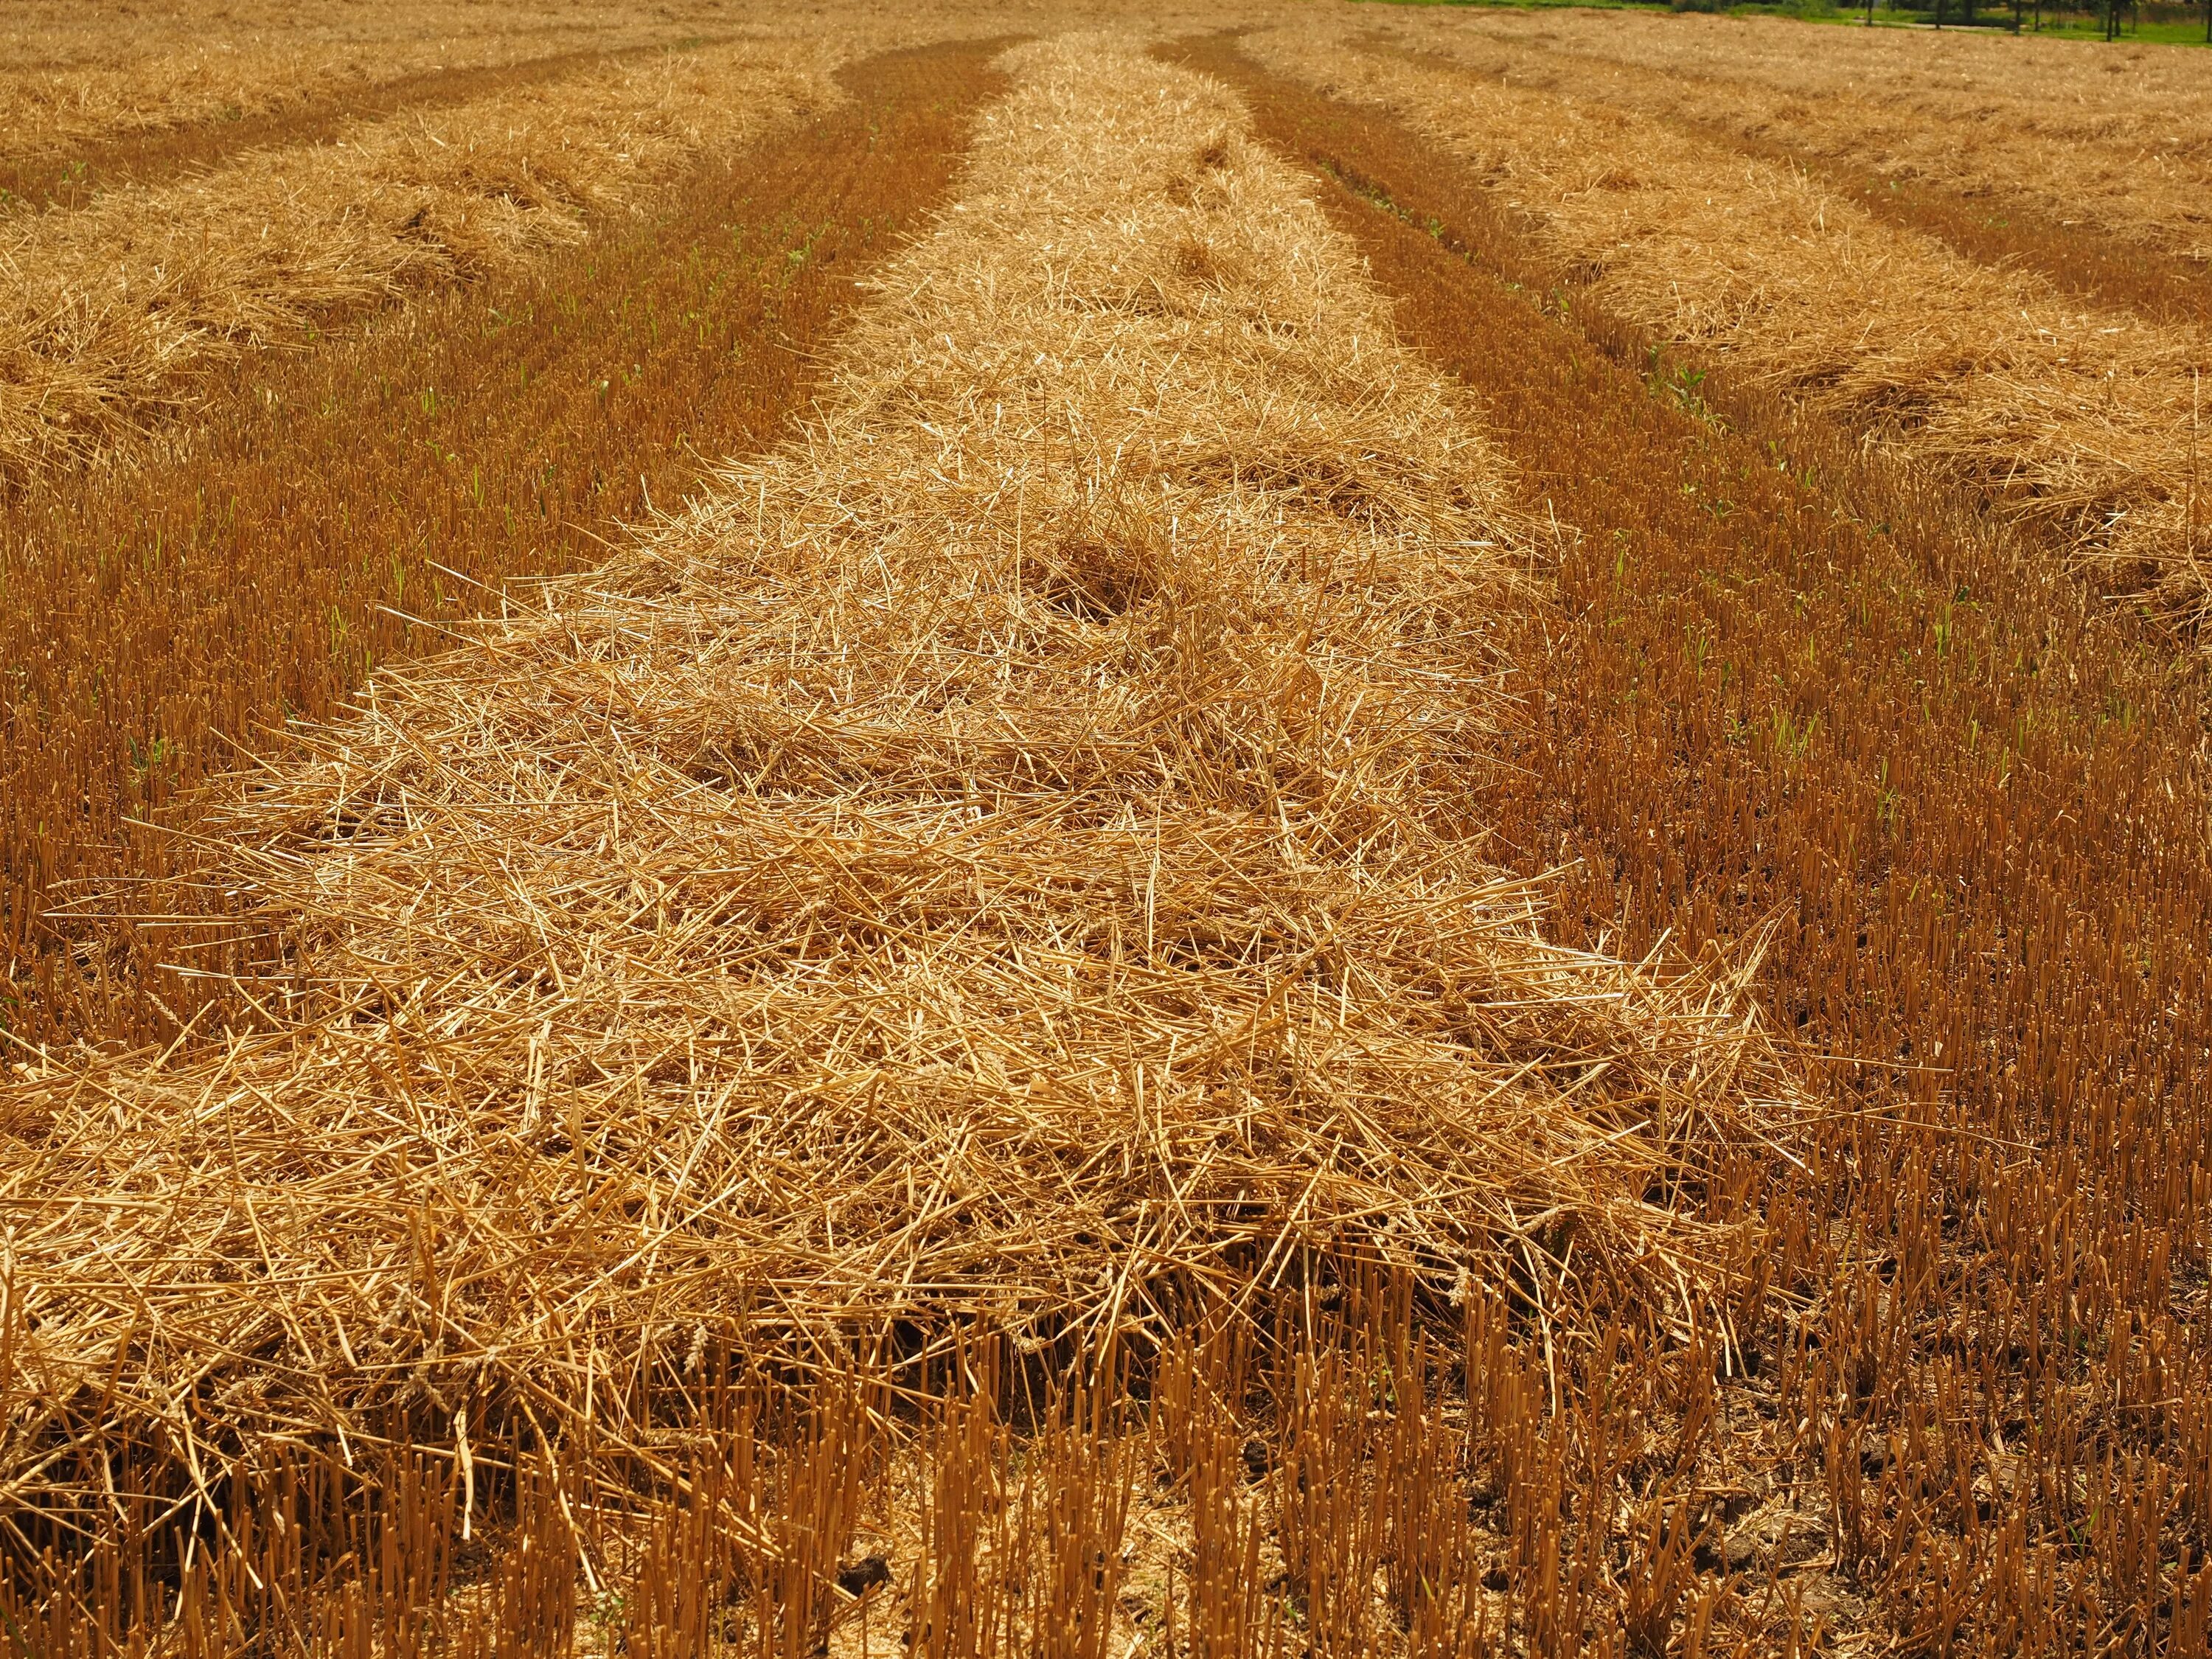 Убранное поле. Поле стерня. Солома пшеницы. Поле засеянное пшеницей. Поле прямоугольной формы засеяно пшеницей длина